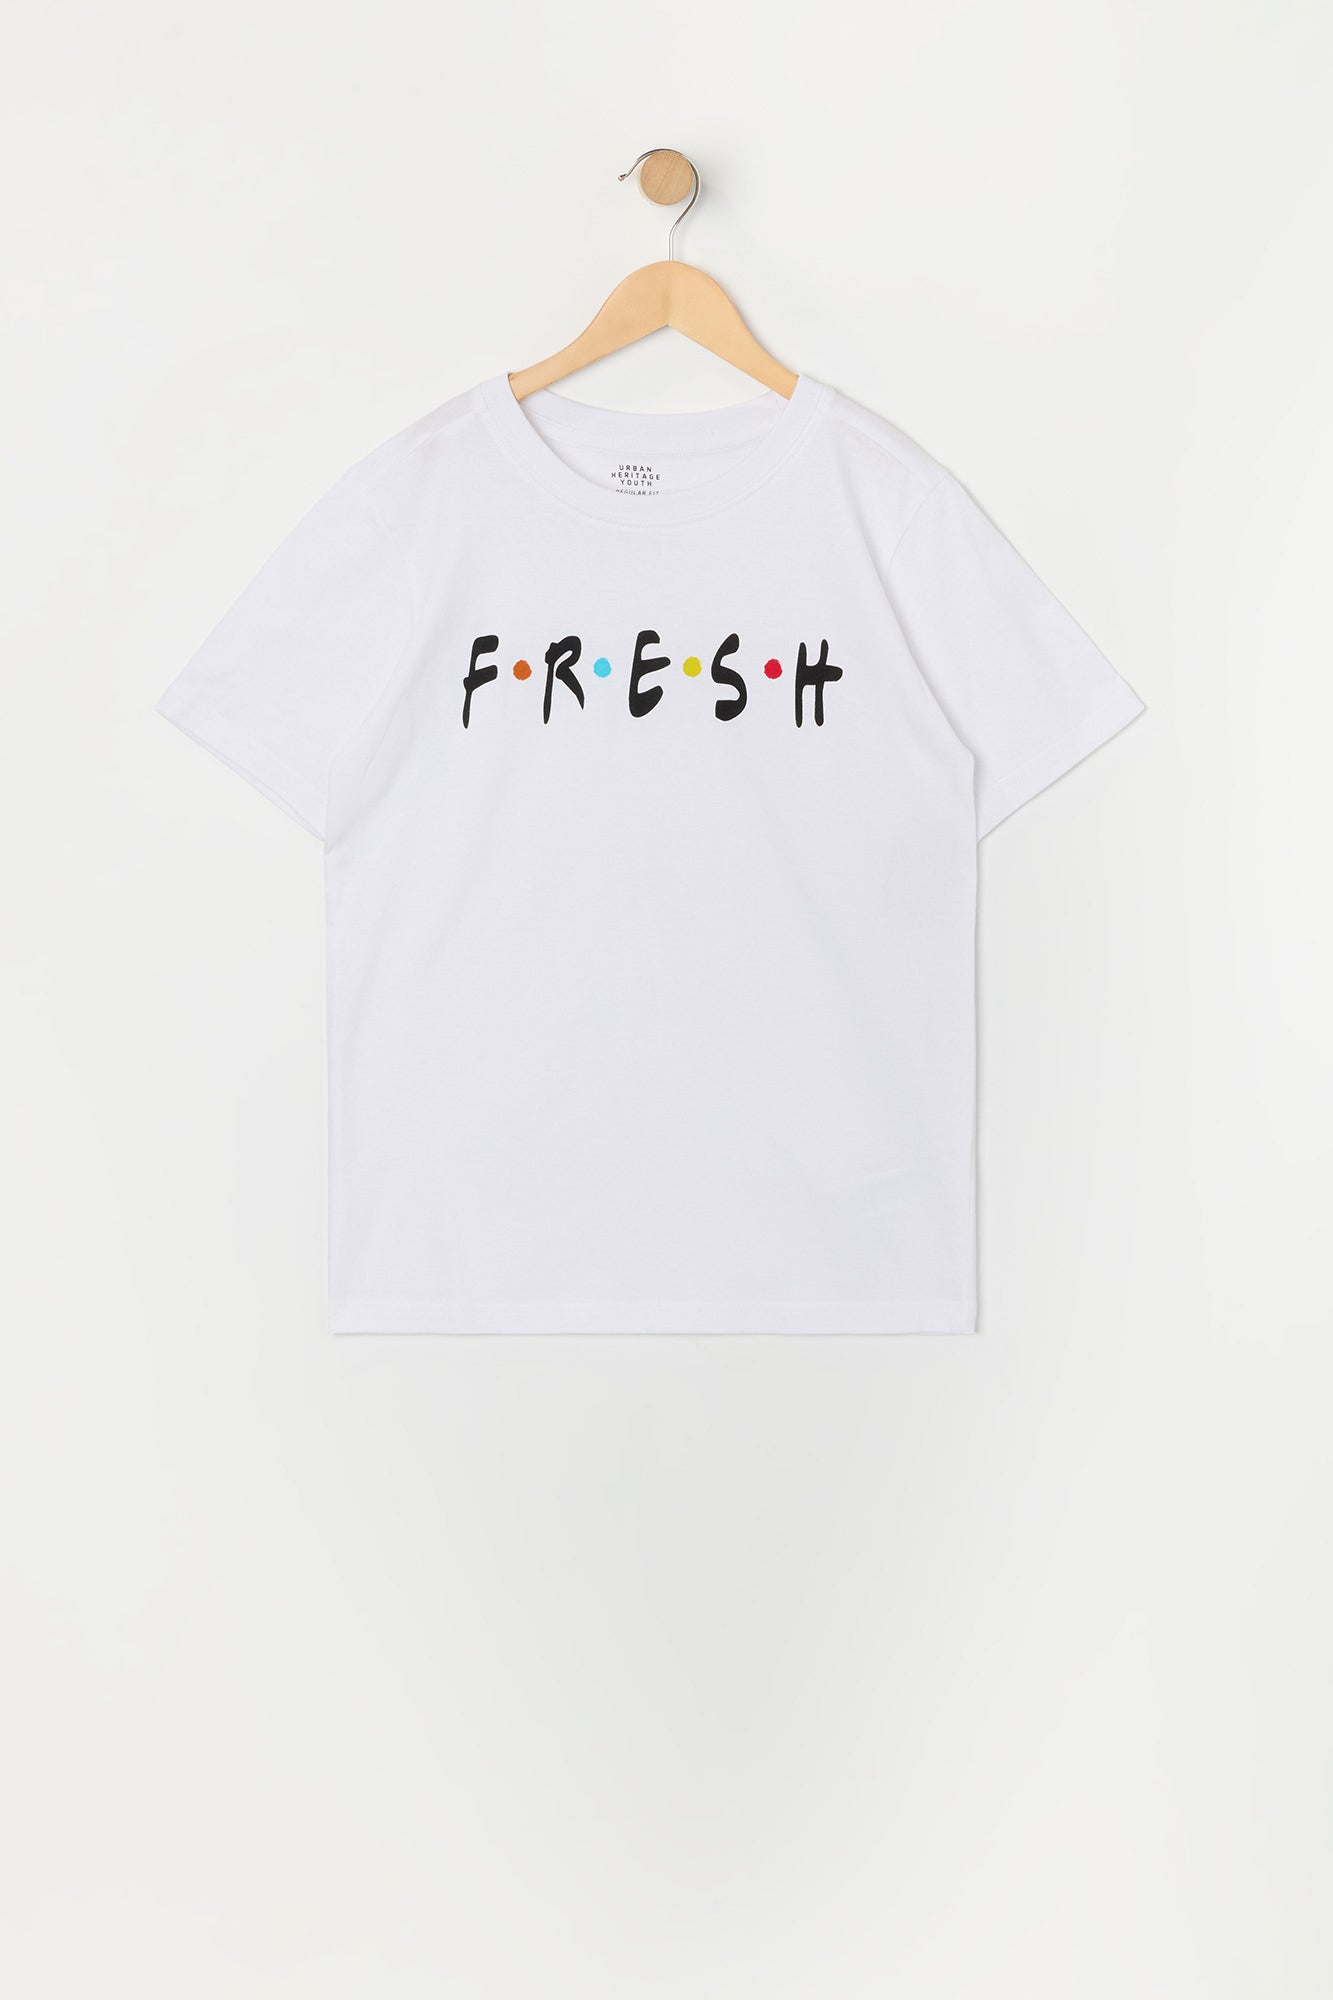 Boys Fresh Graphic T-Shirt